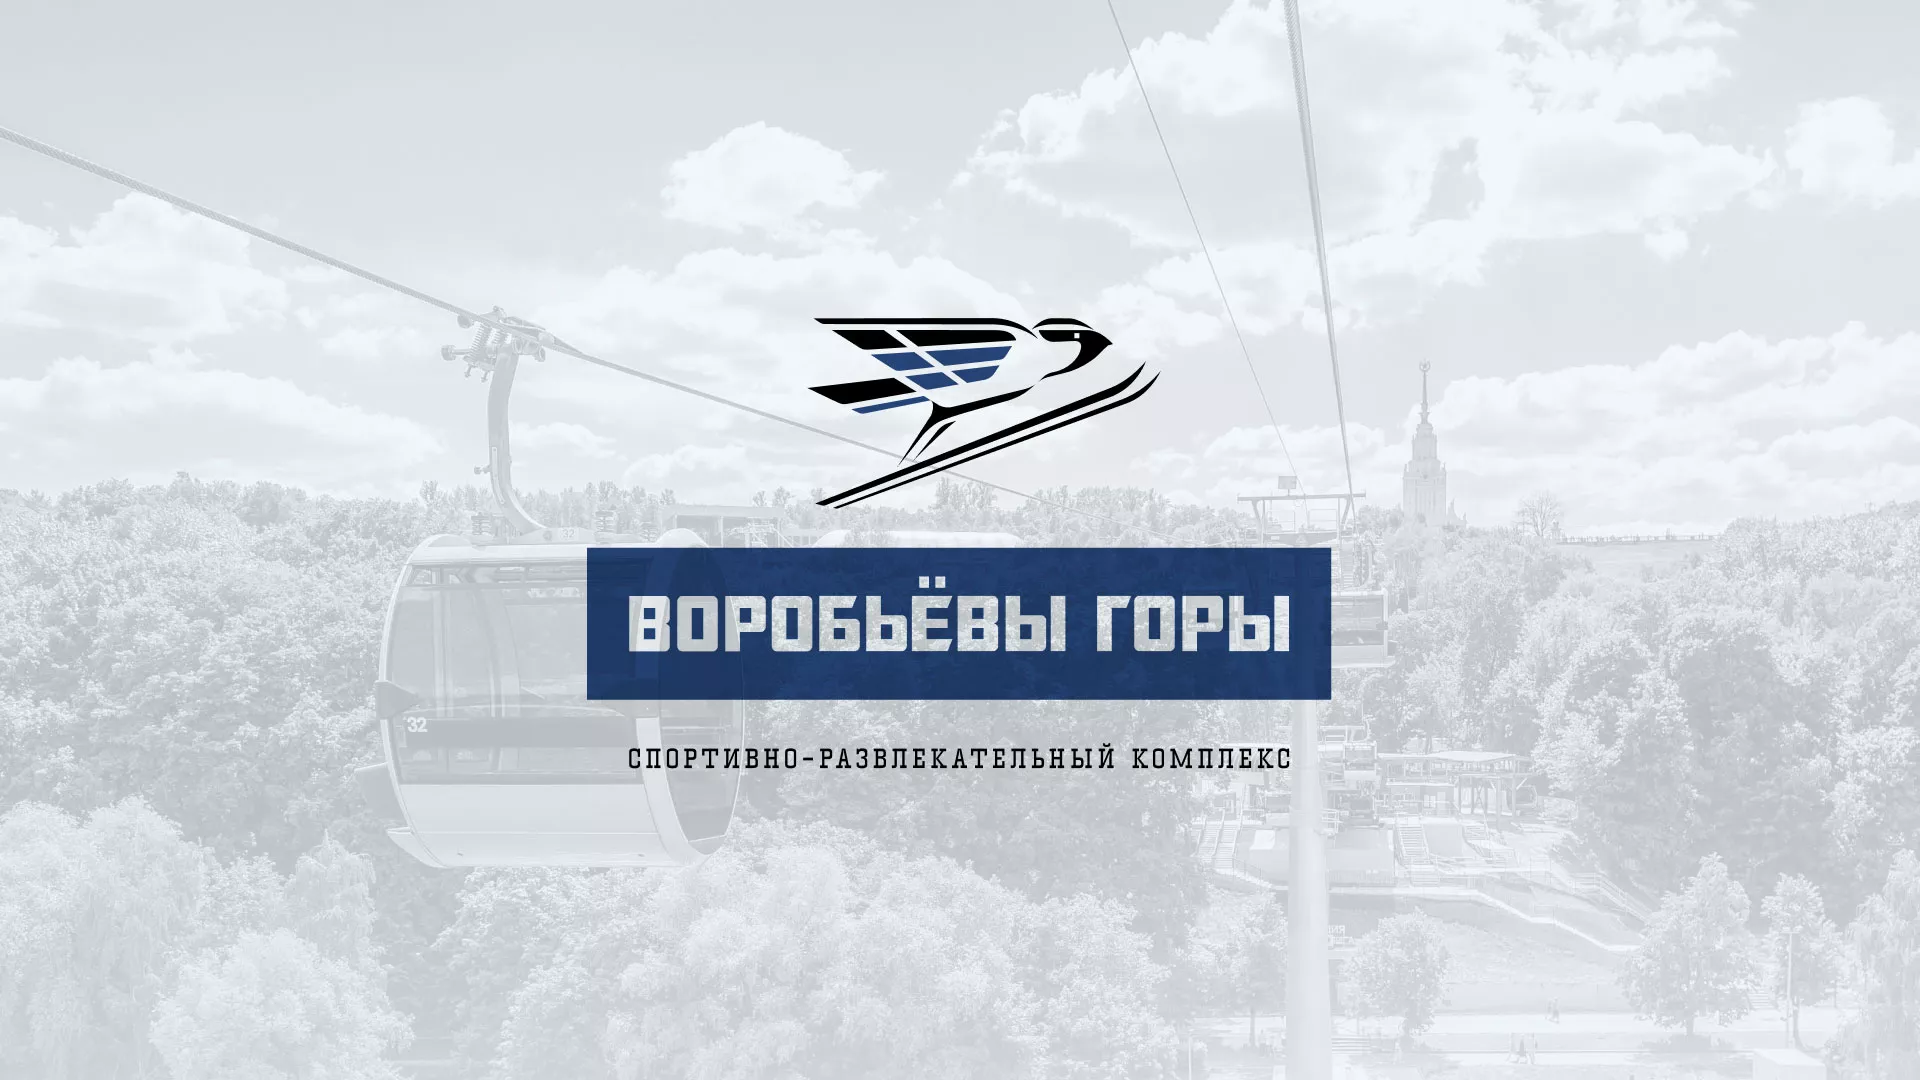 Разработка сайта в Верхнеуральске для спортивно-развлекательного комплекса «Воробьёвы горы»